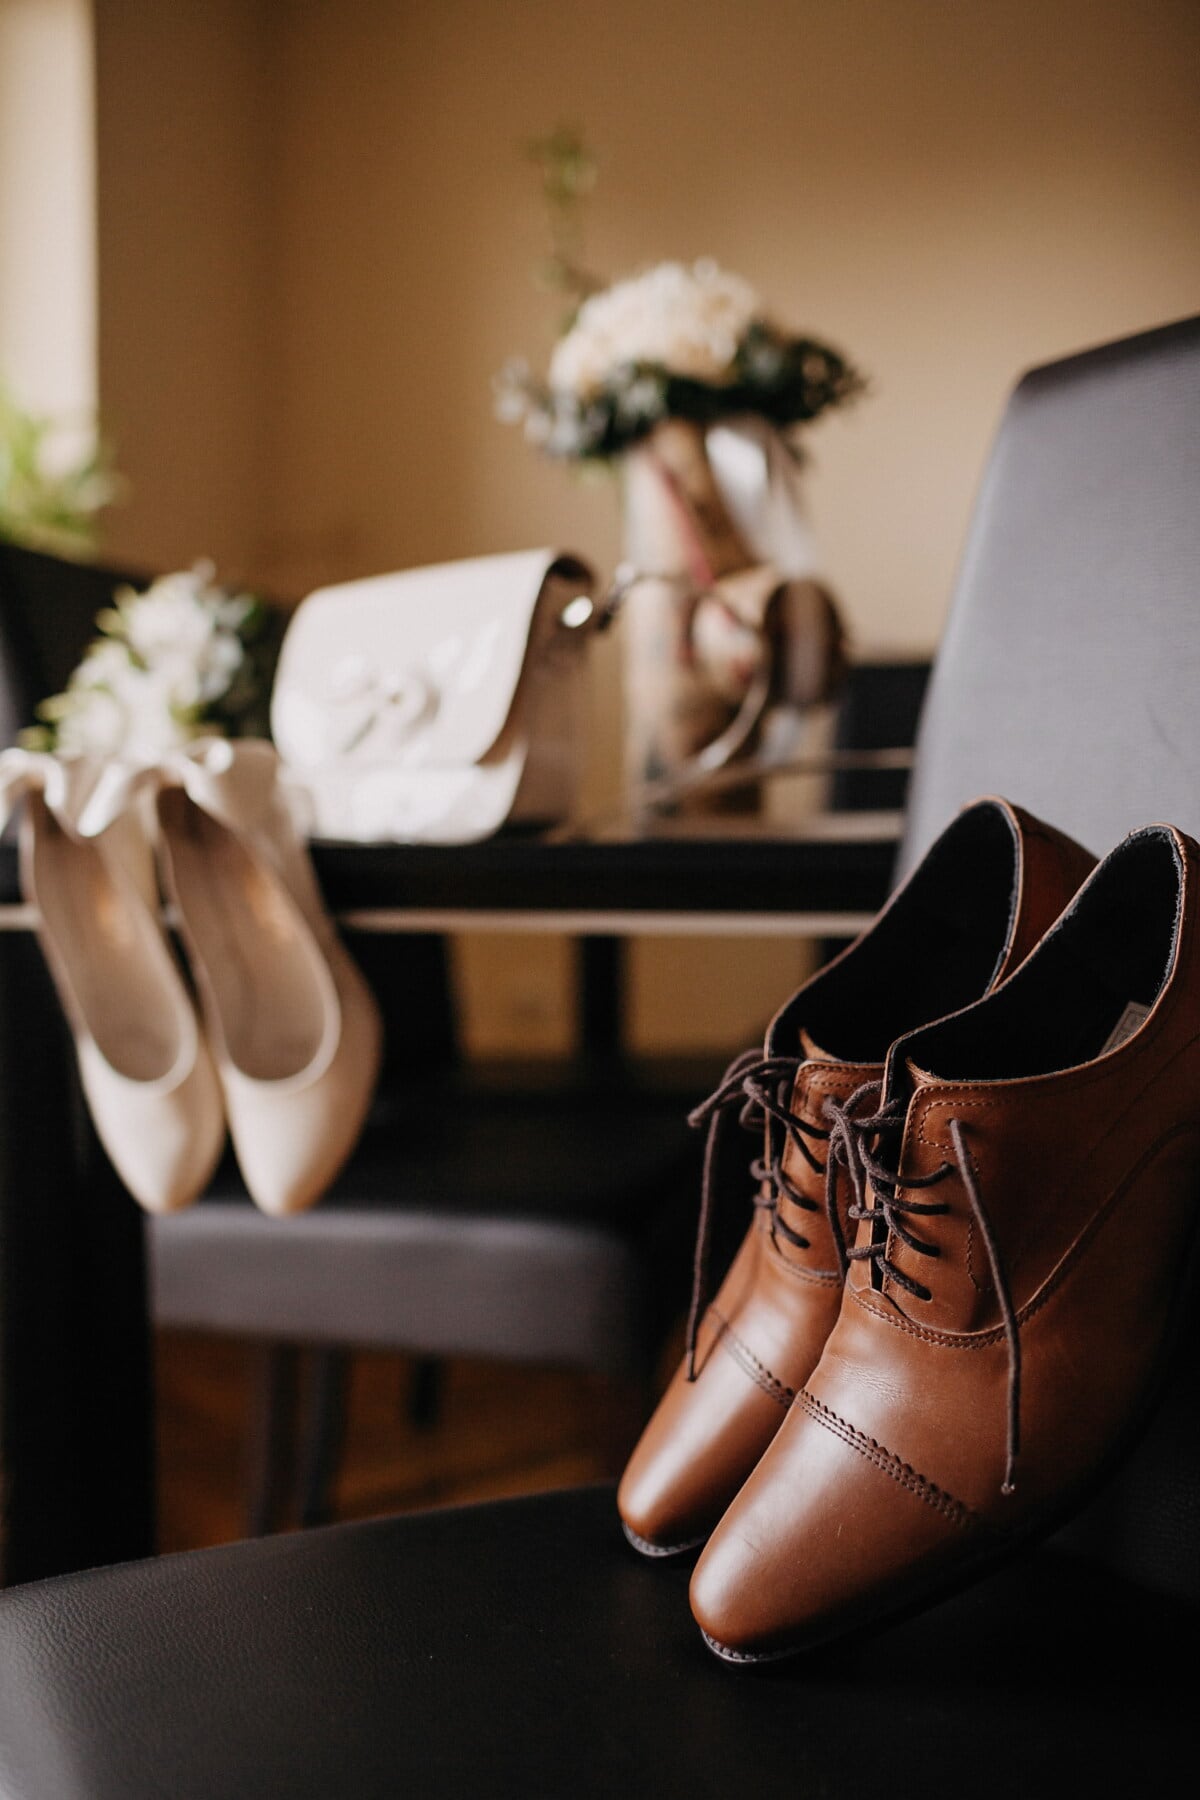 รองเท้าแตะ, รองเท้า, งานแต่งงาน, คลาสสิก, สบาย ๆ, ไลฟ์สไตล์, ทันสมัย, รองเท้า, แฟชั่น, รองเท้า